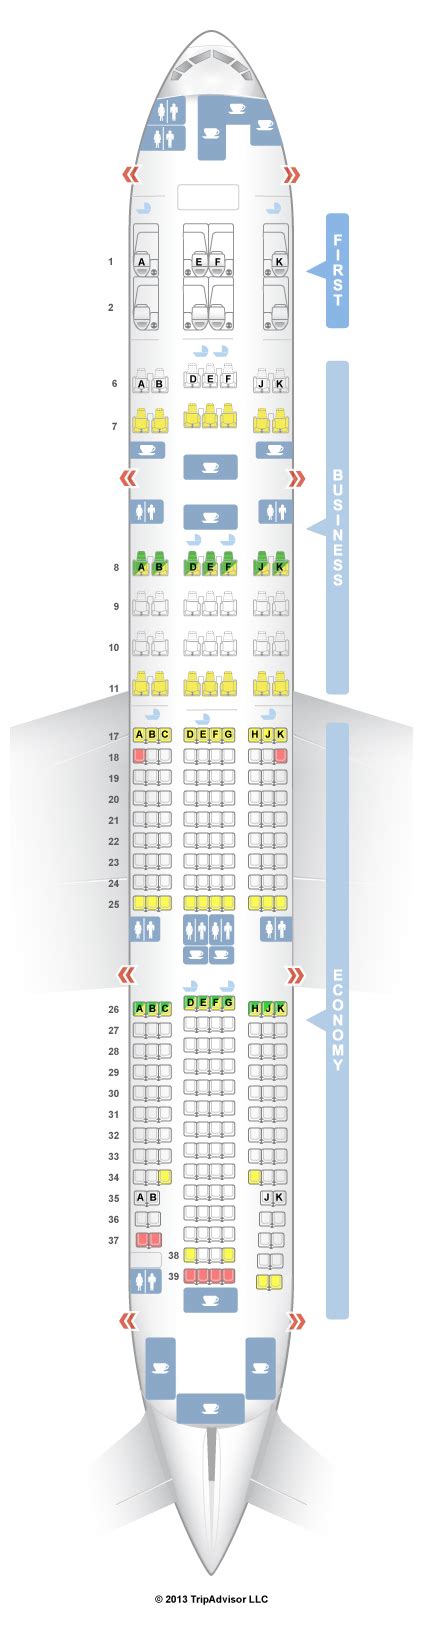 boeing 777-200lr emirates seat map